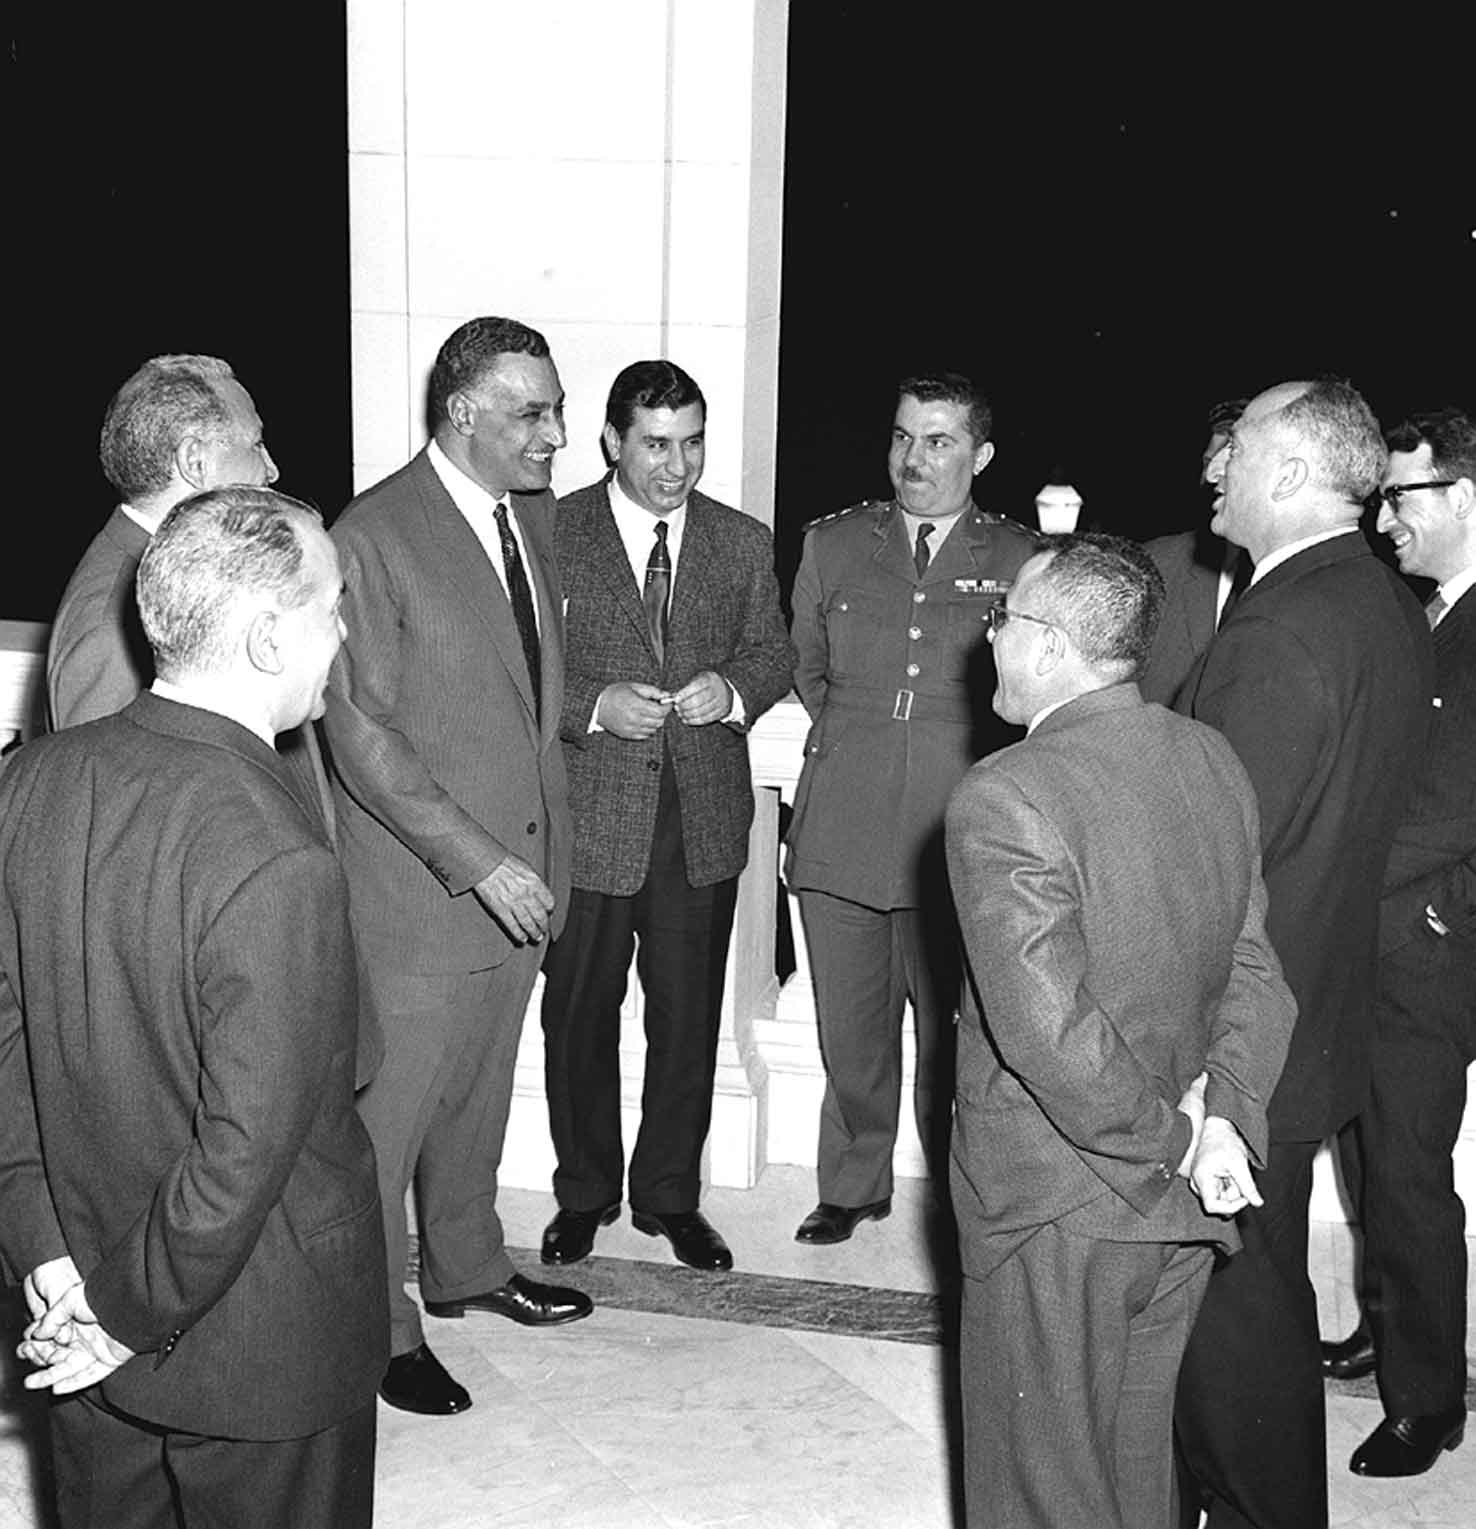 التاريخ السوري المعاصر - أعضاء مجلس قيادة الثورة في سورية مع جمال عبد الناصر في القاهرة عام 1963